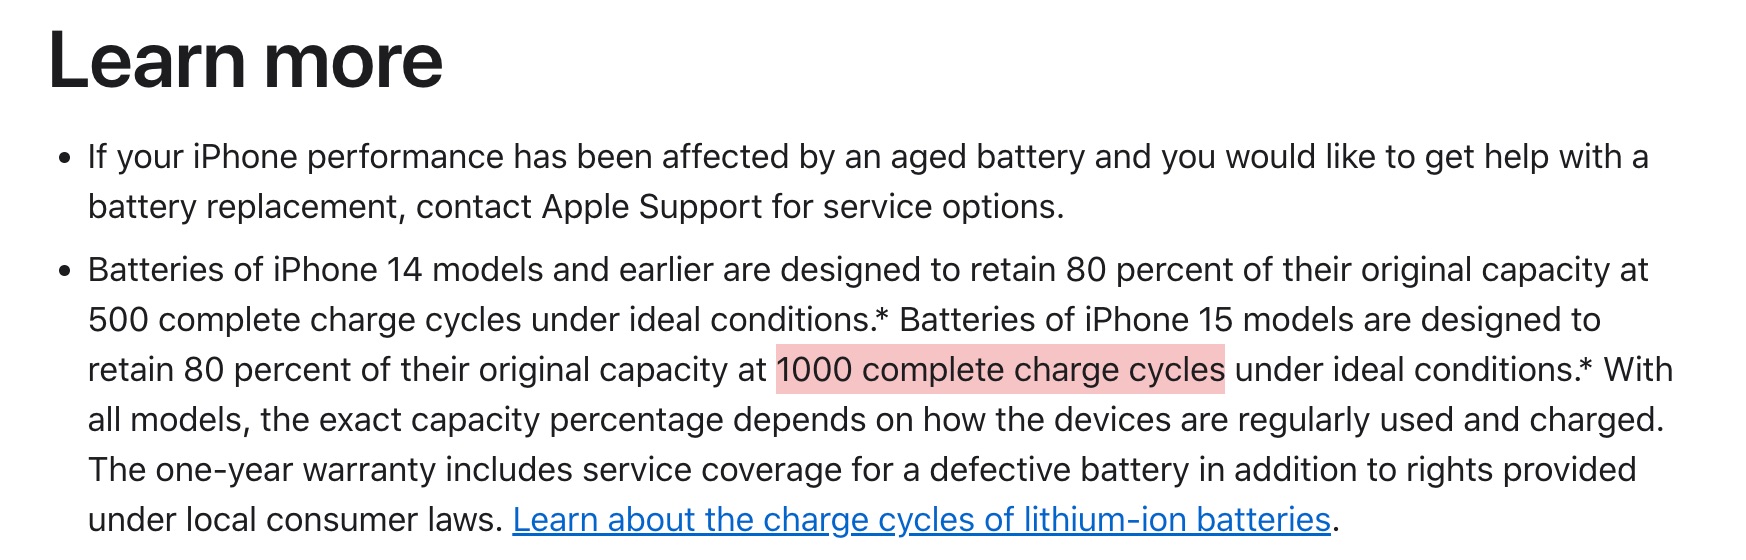 Apple indica en su web que el iPhone 15 tiene una batería que aguanta hasta 1000 ciclos de carga y descarga sin que su rendimiento total baje del 80% de su capacidad de carga original.